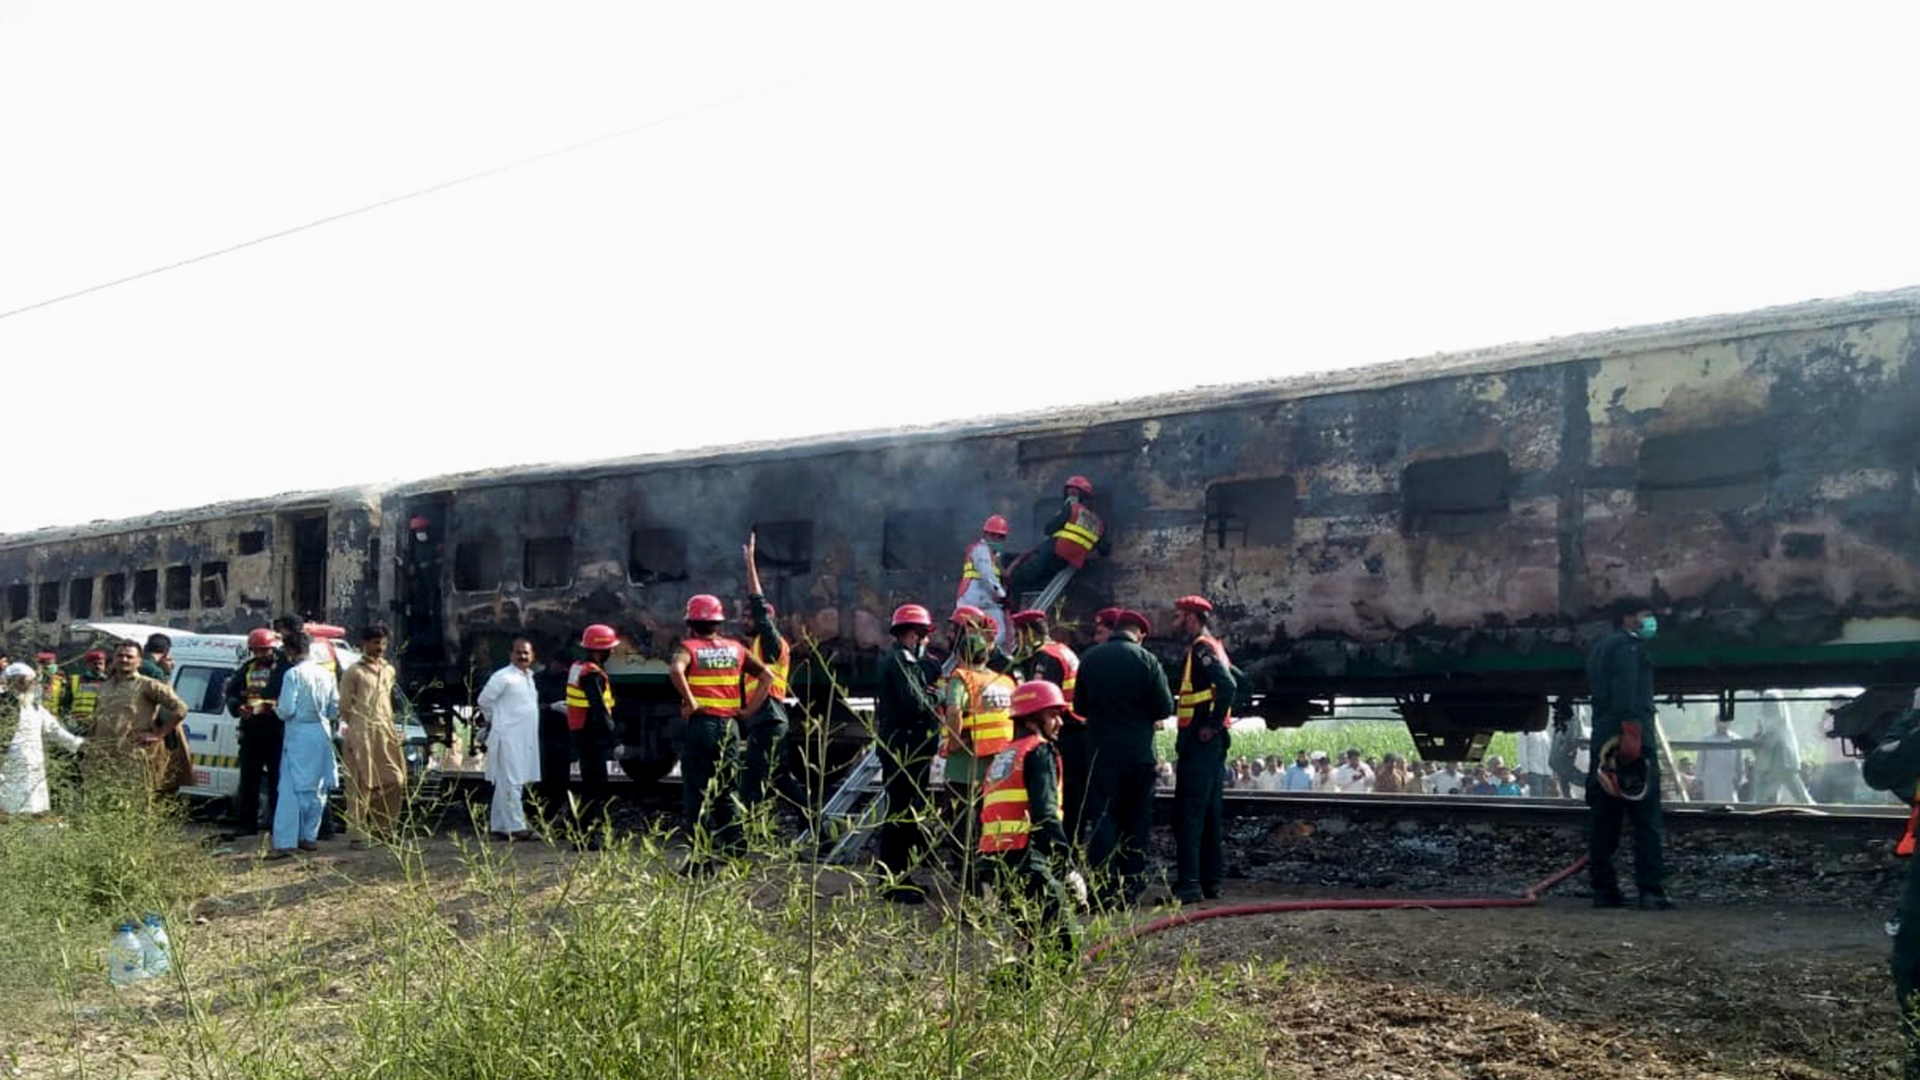 Ein ausgebrannter Zug in Pakistan | STRINGER/EPA-EFE/REX